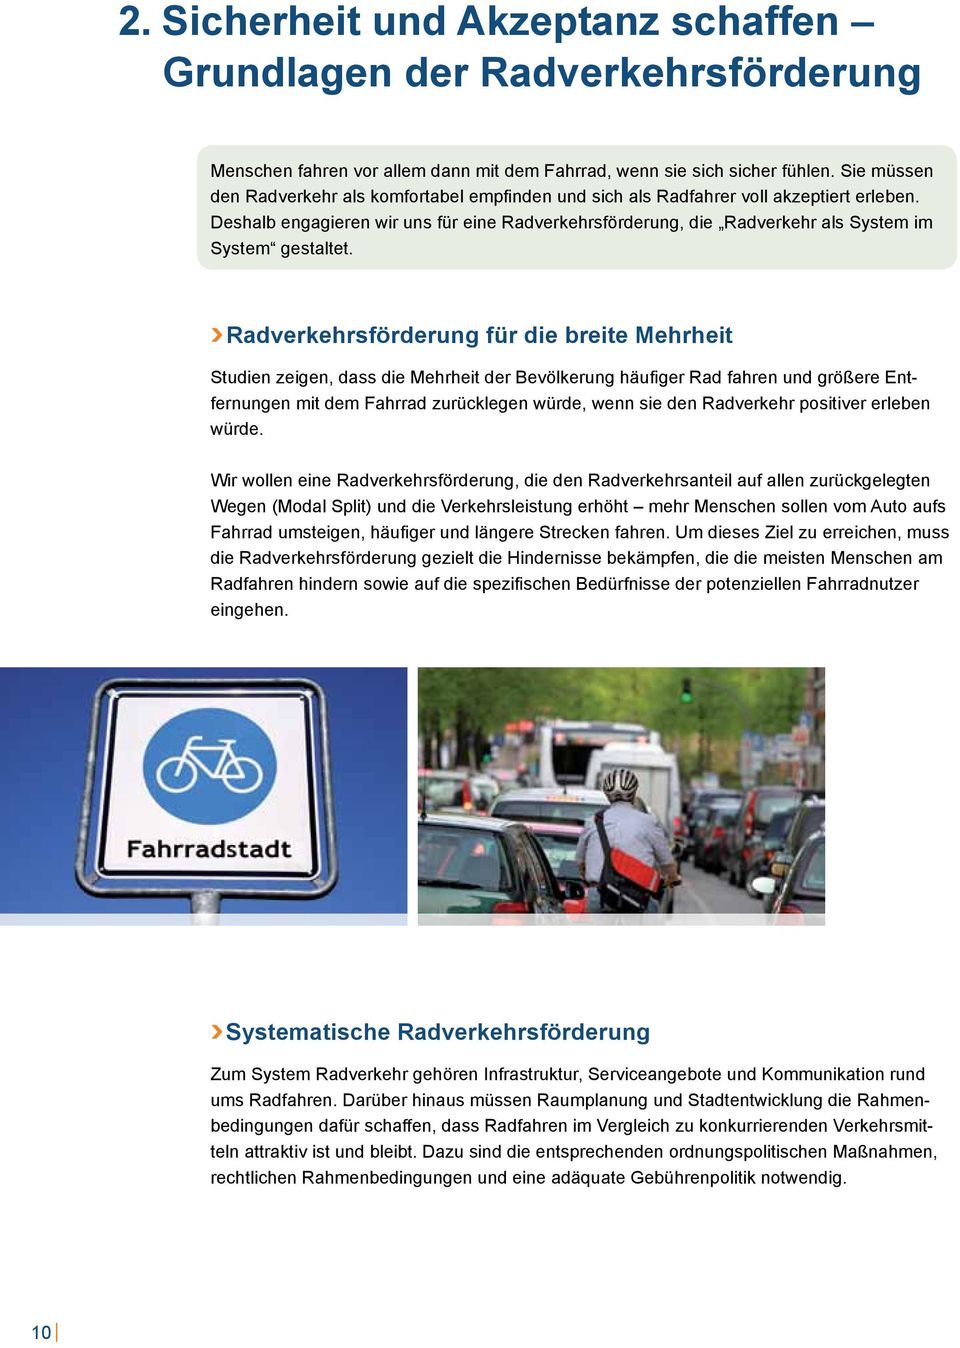 Deshalb engagieren wir uns für eine Radverkehrsförderung, die Radverkehr als System im System gestaltet.